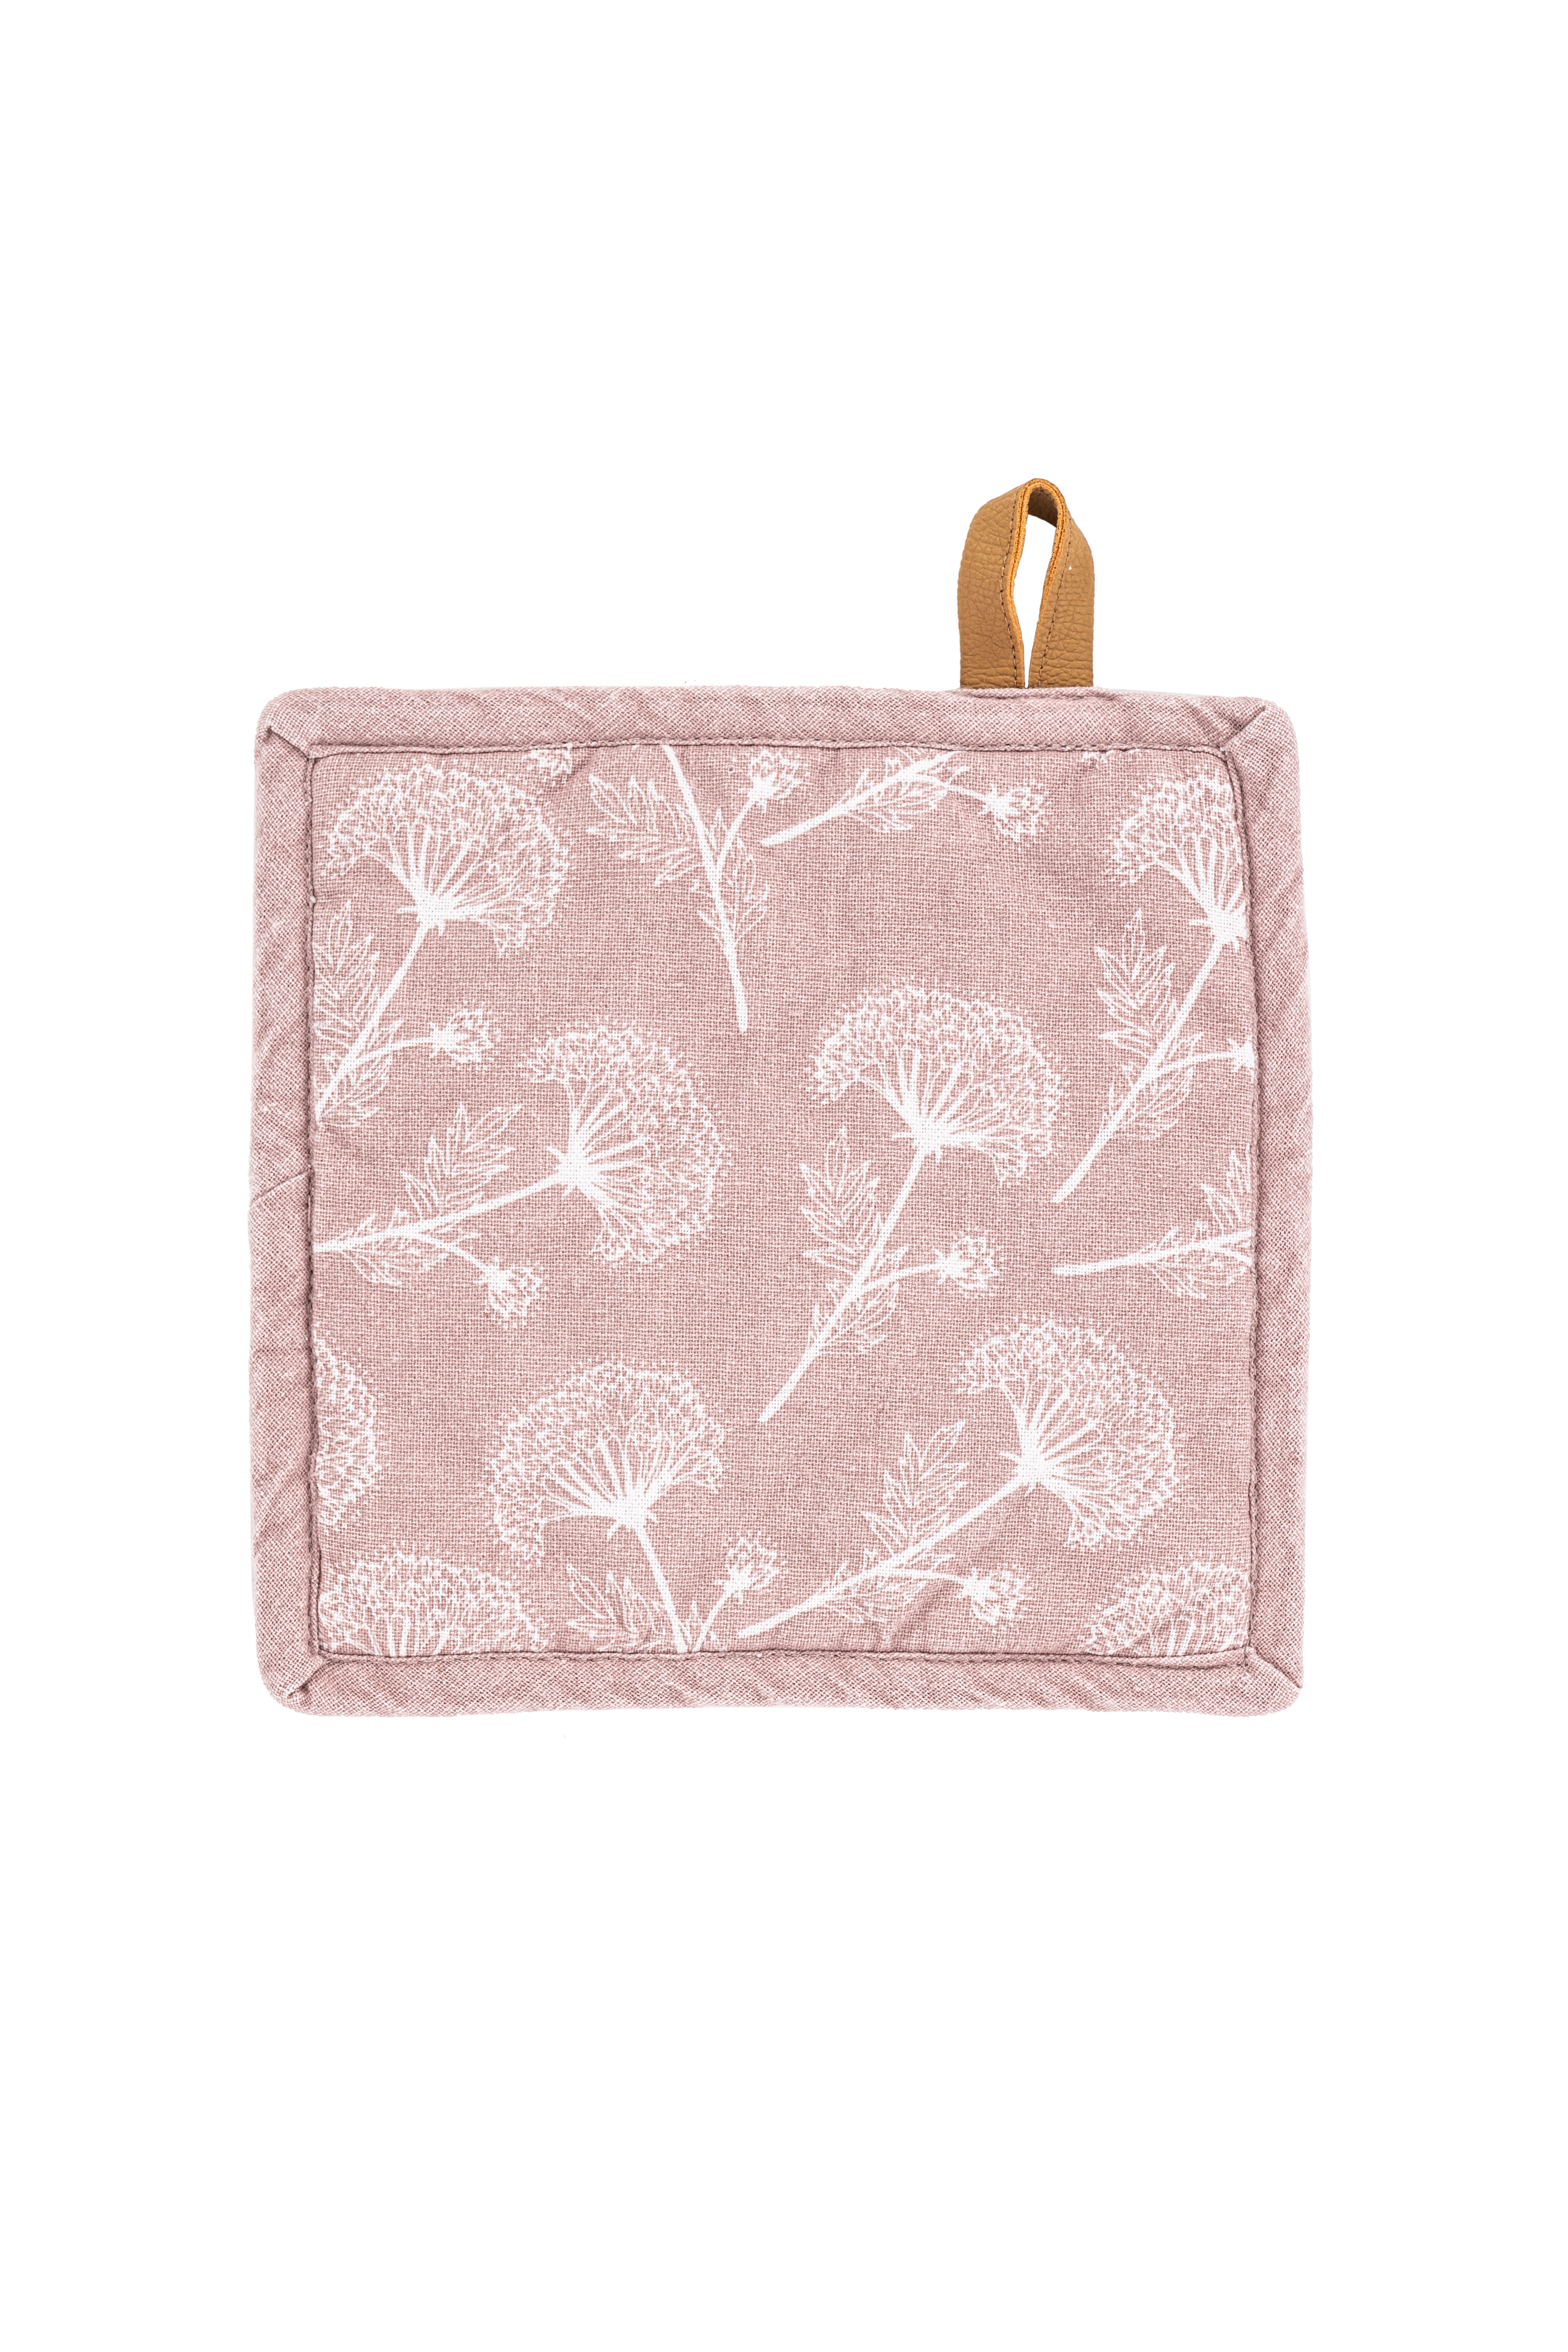 Manique MYRNA, floral printed, 20x20cm - set/2, pink